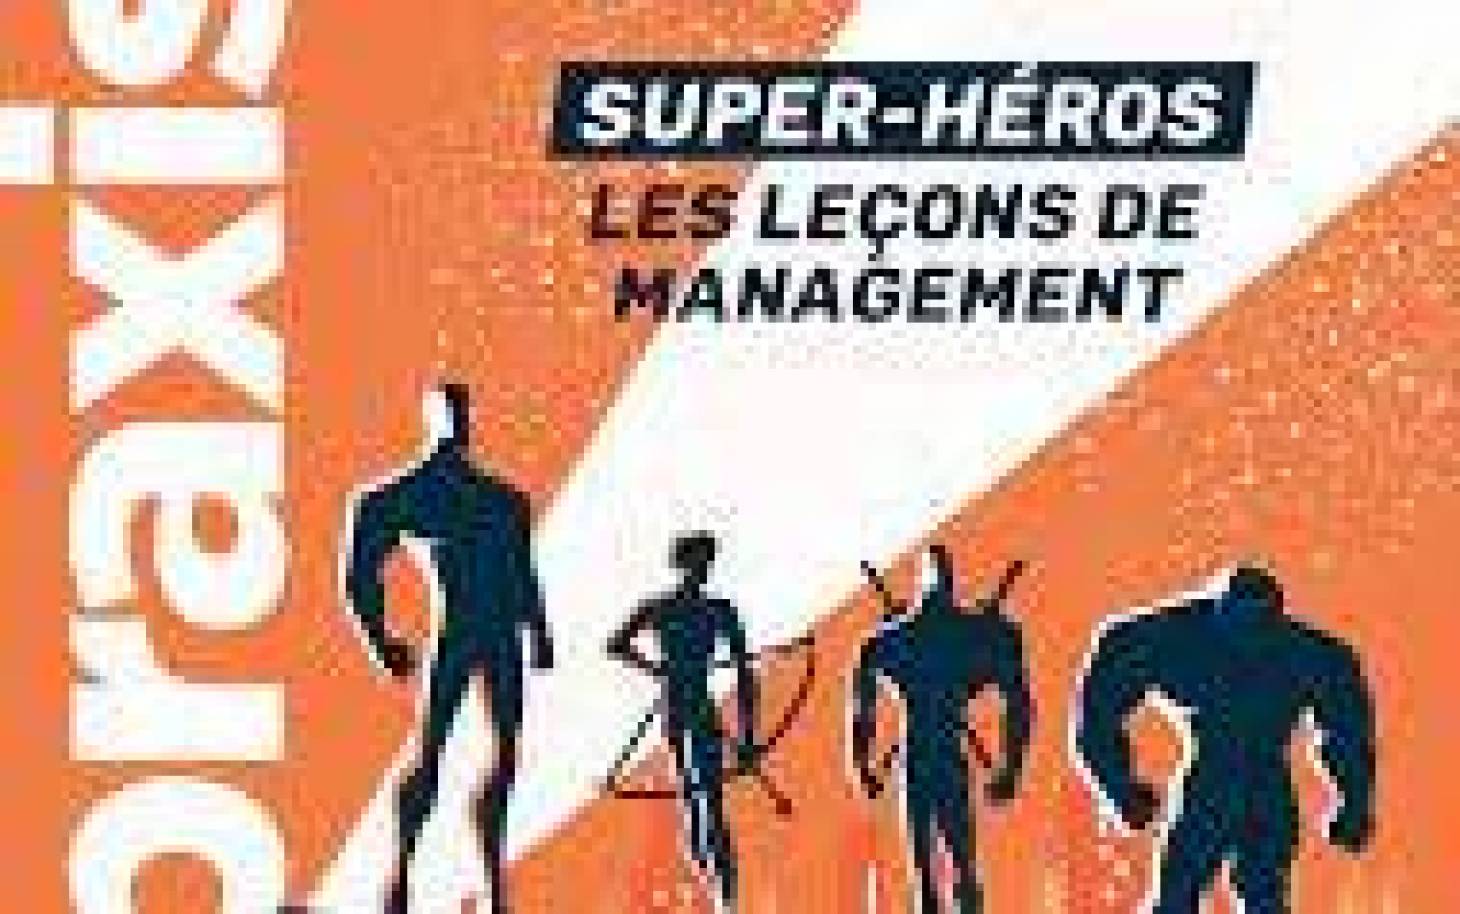 Praxis et les super-héros